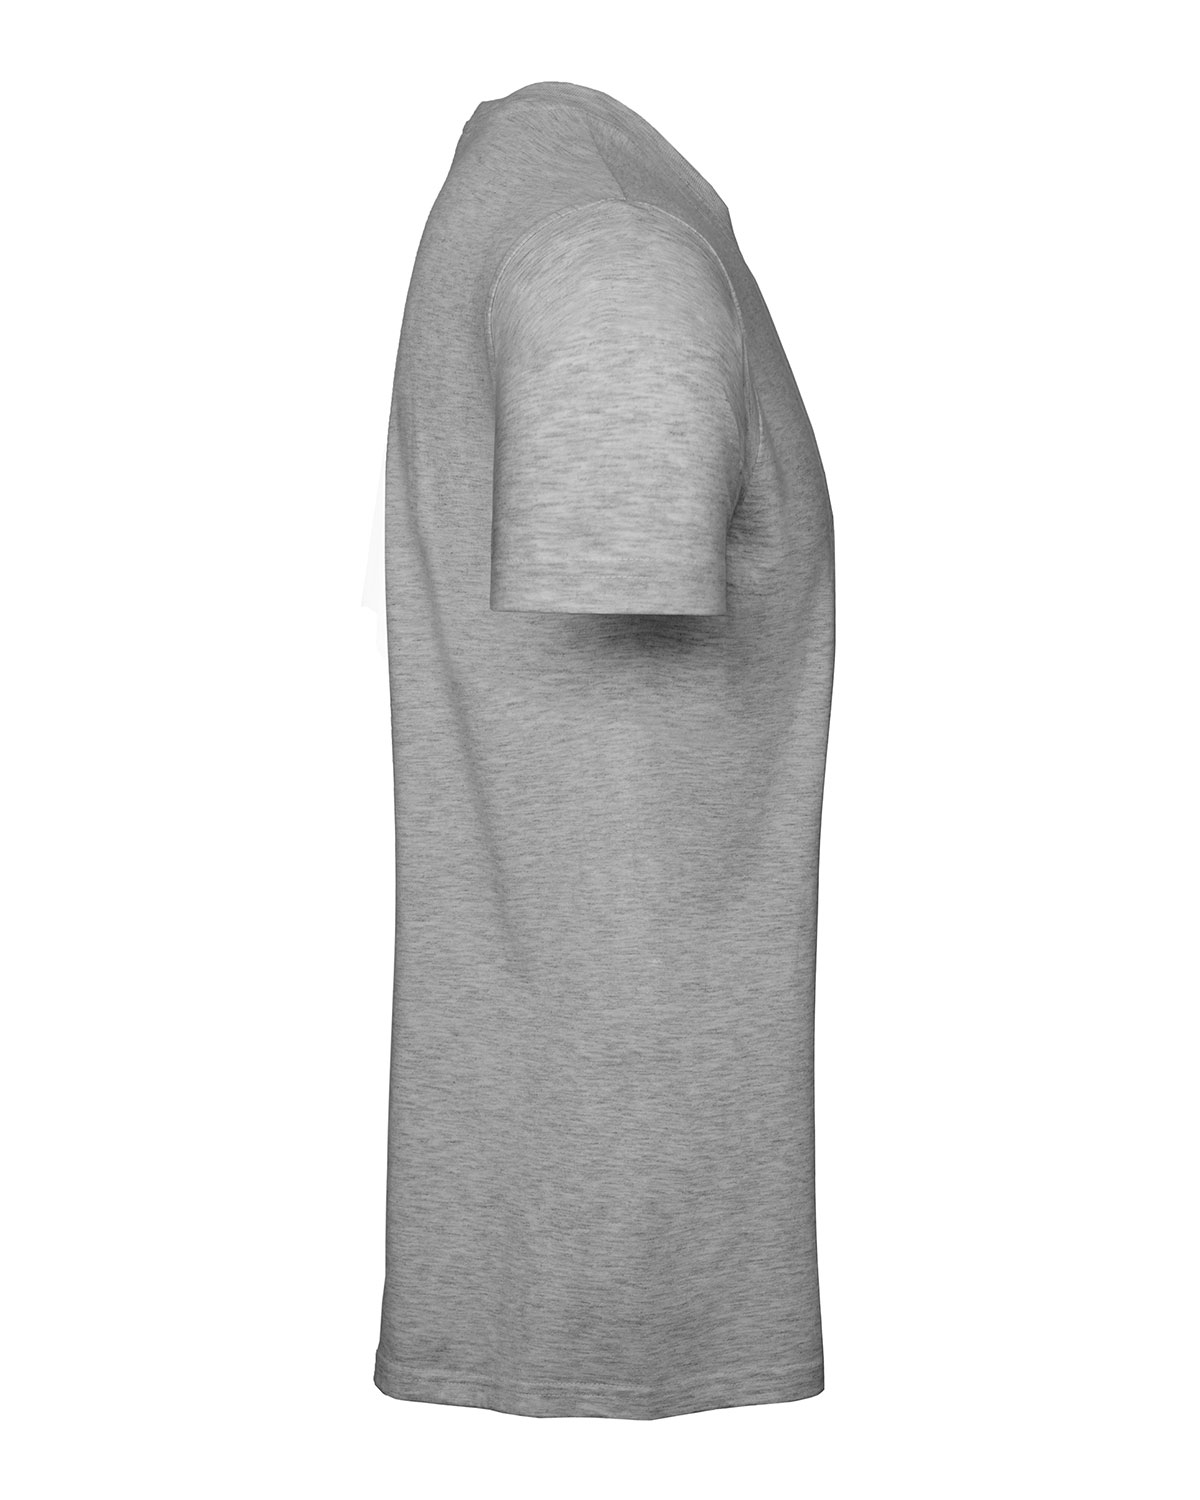 T-Shirt #E190 Sport Grey (Heather) 5XL